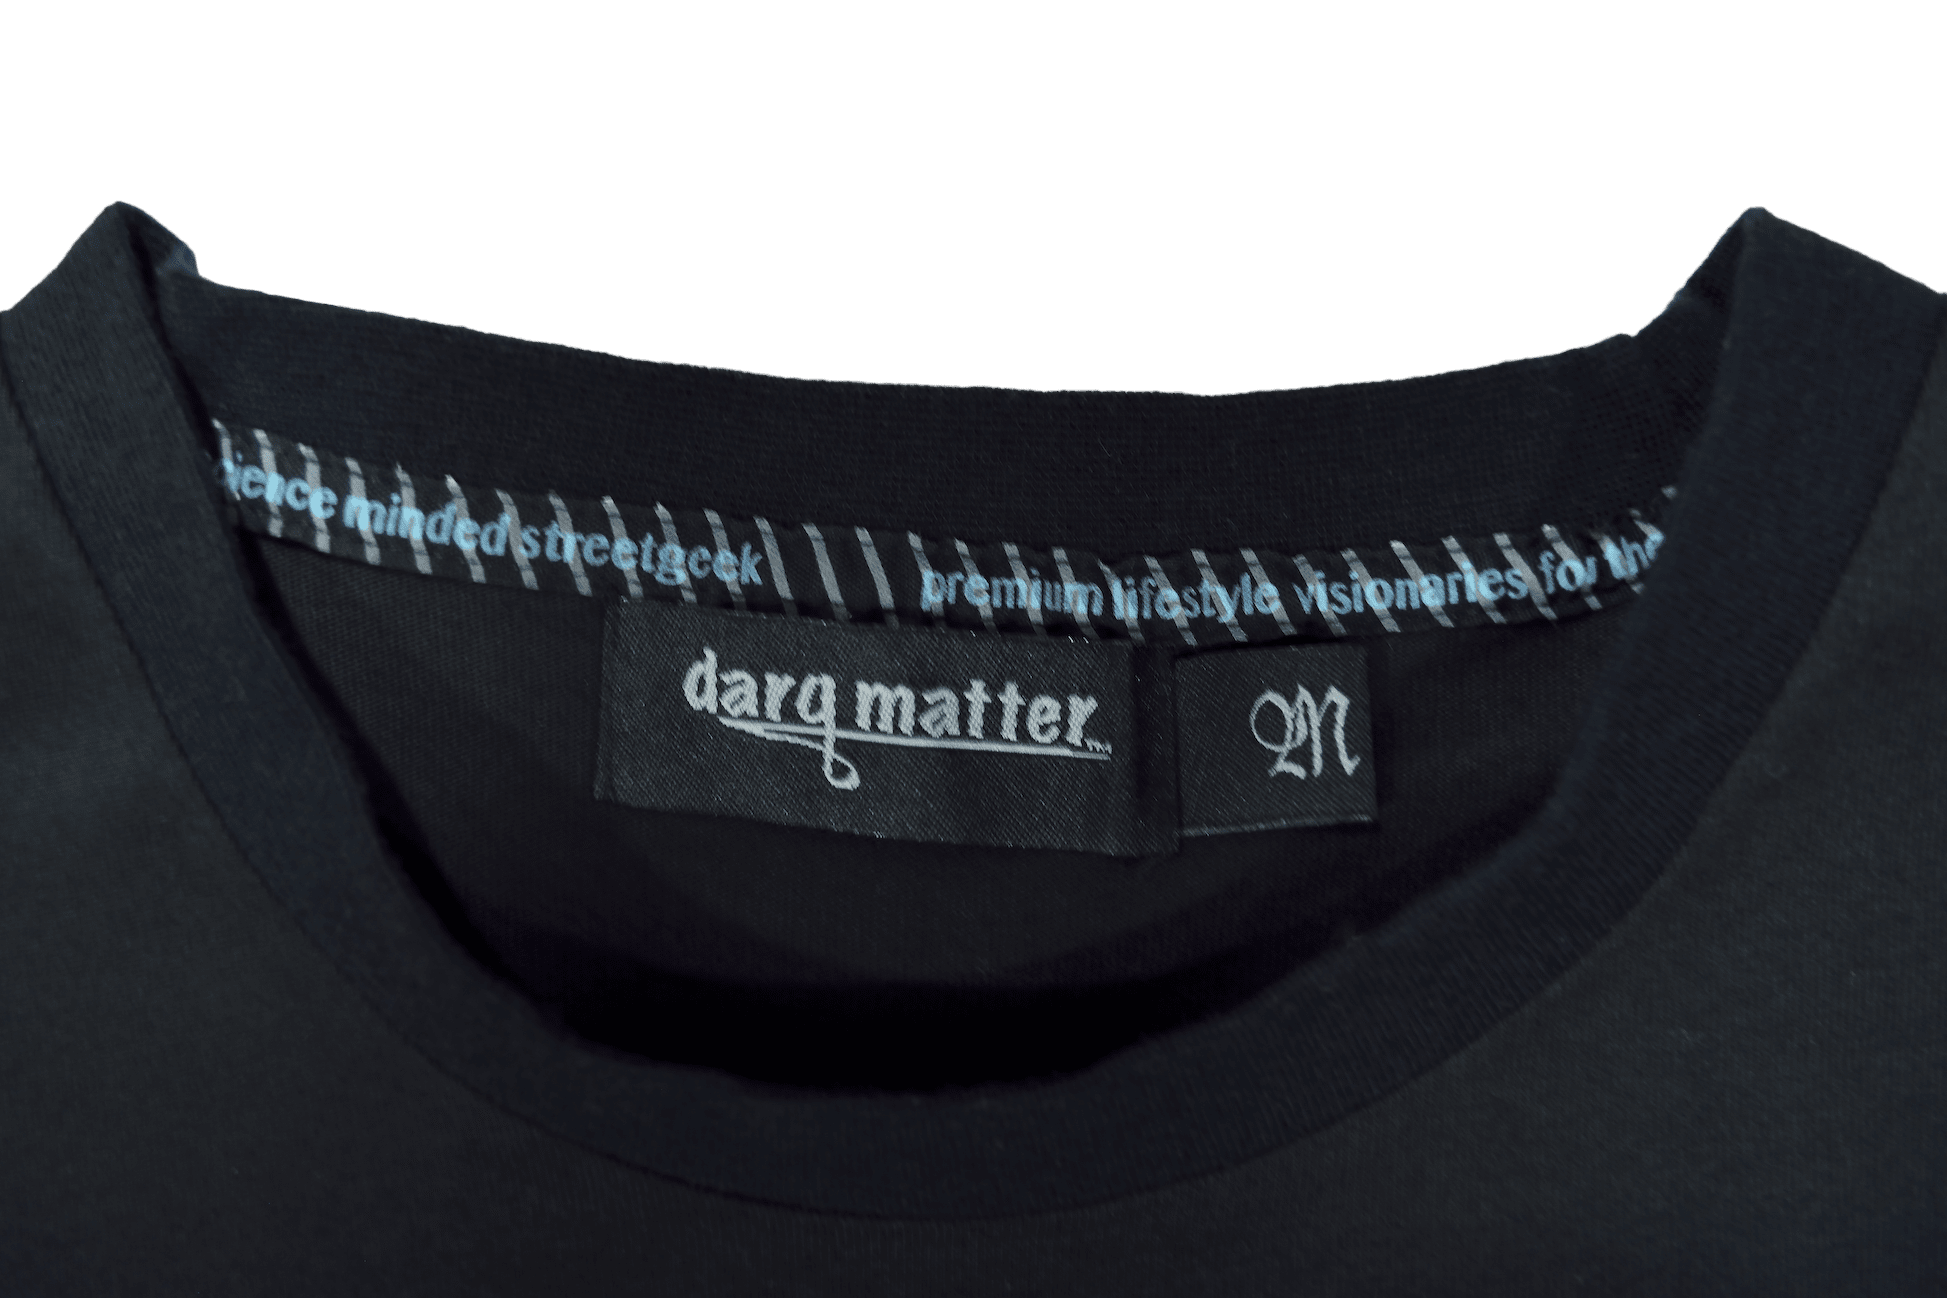 DarqMatterDesign CutnSew T-Shirts PowerU